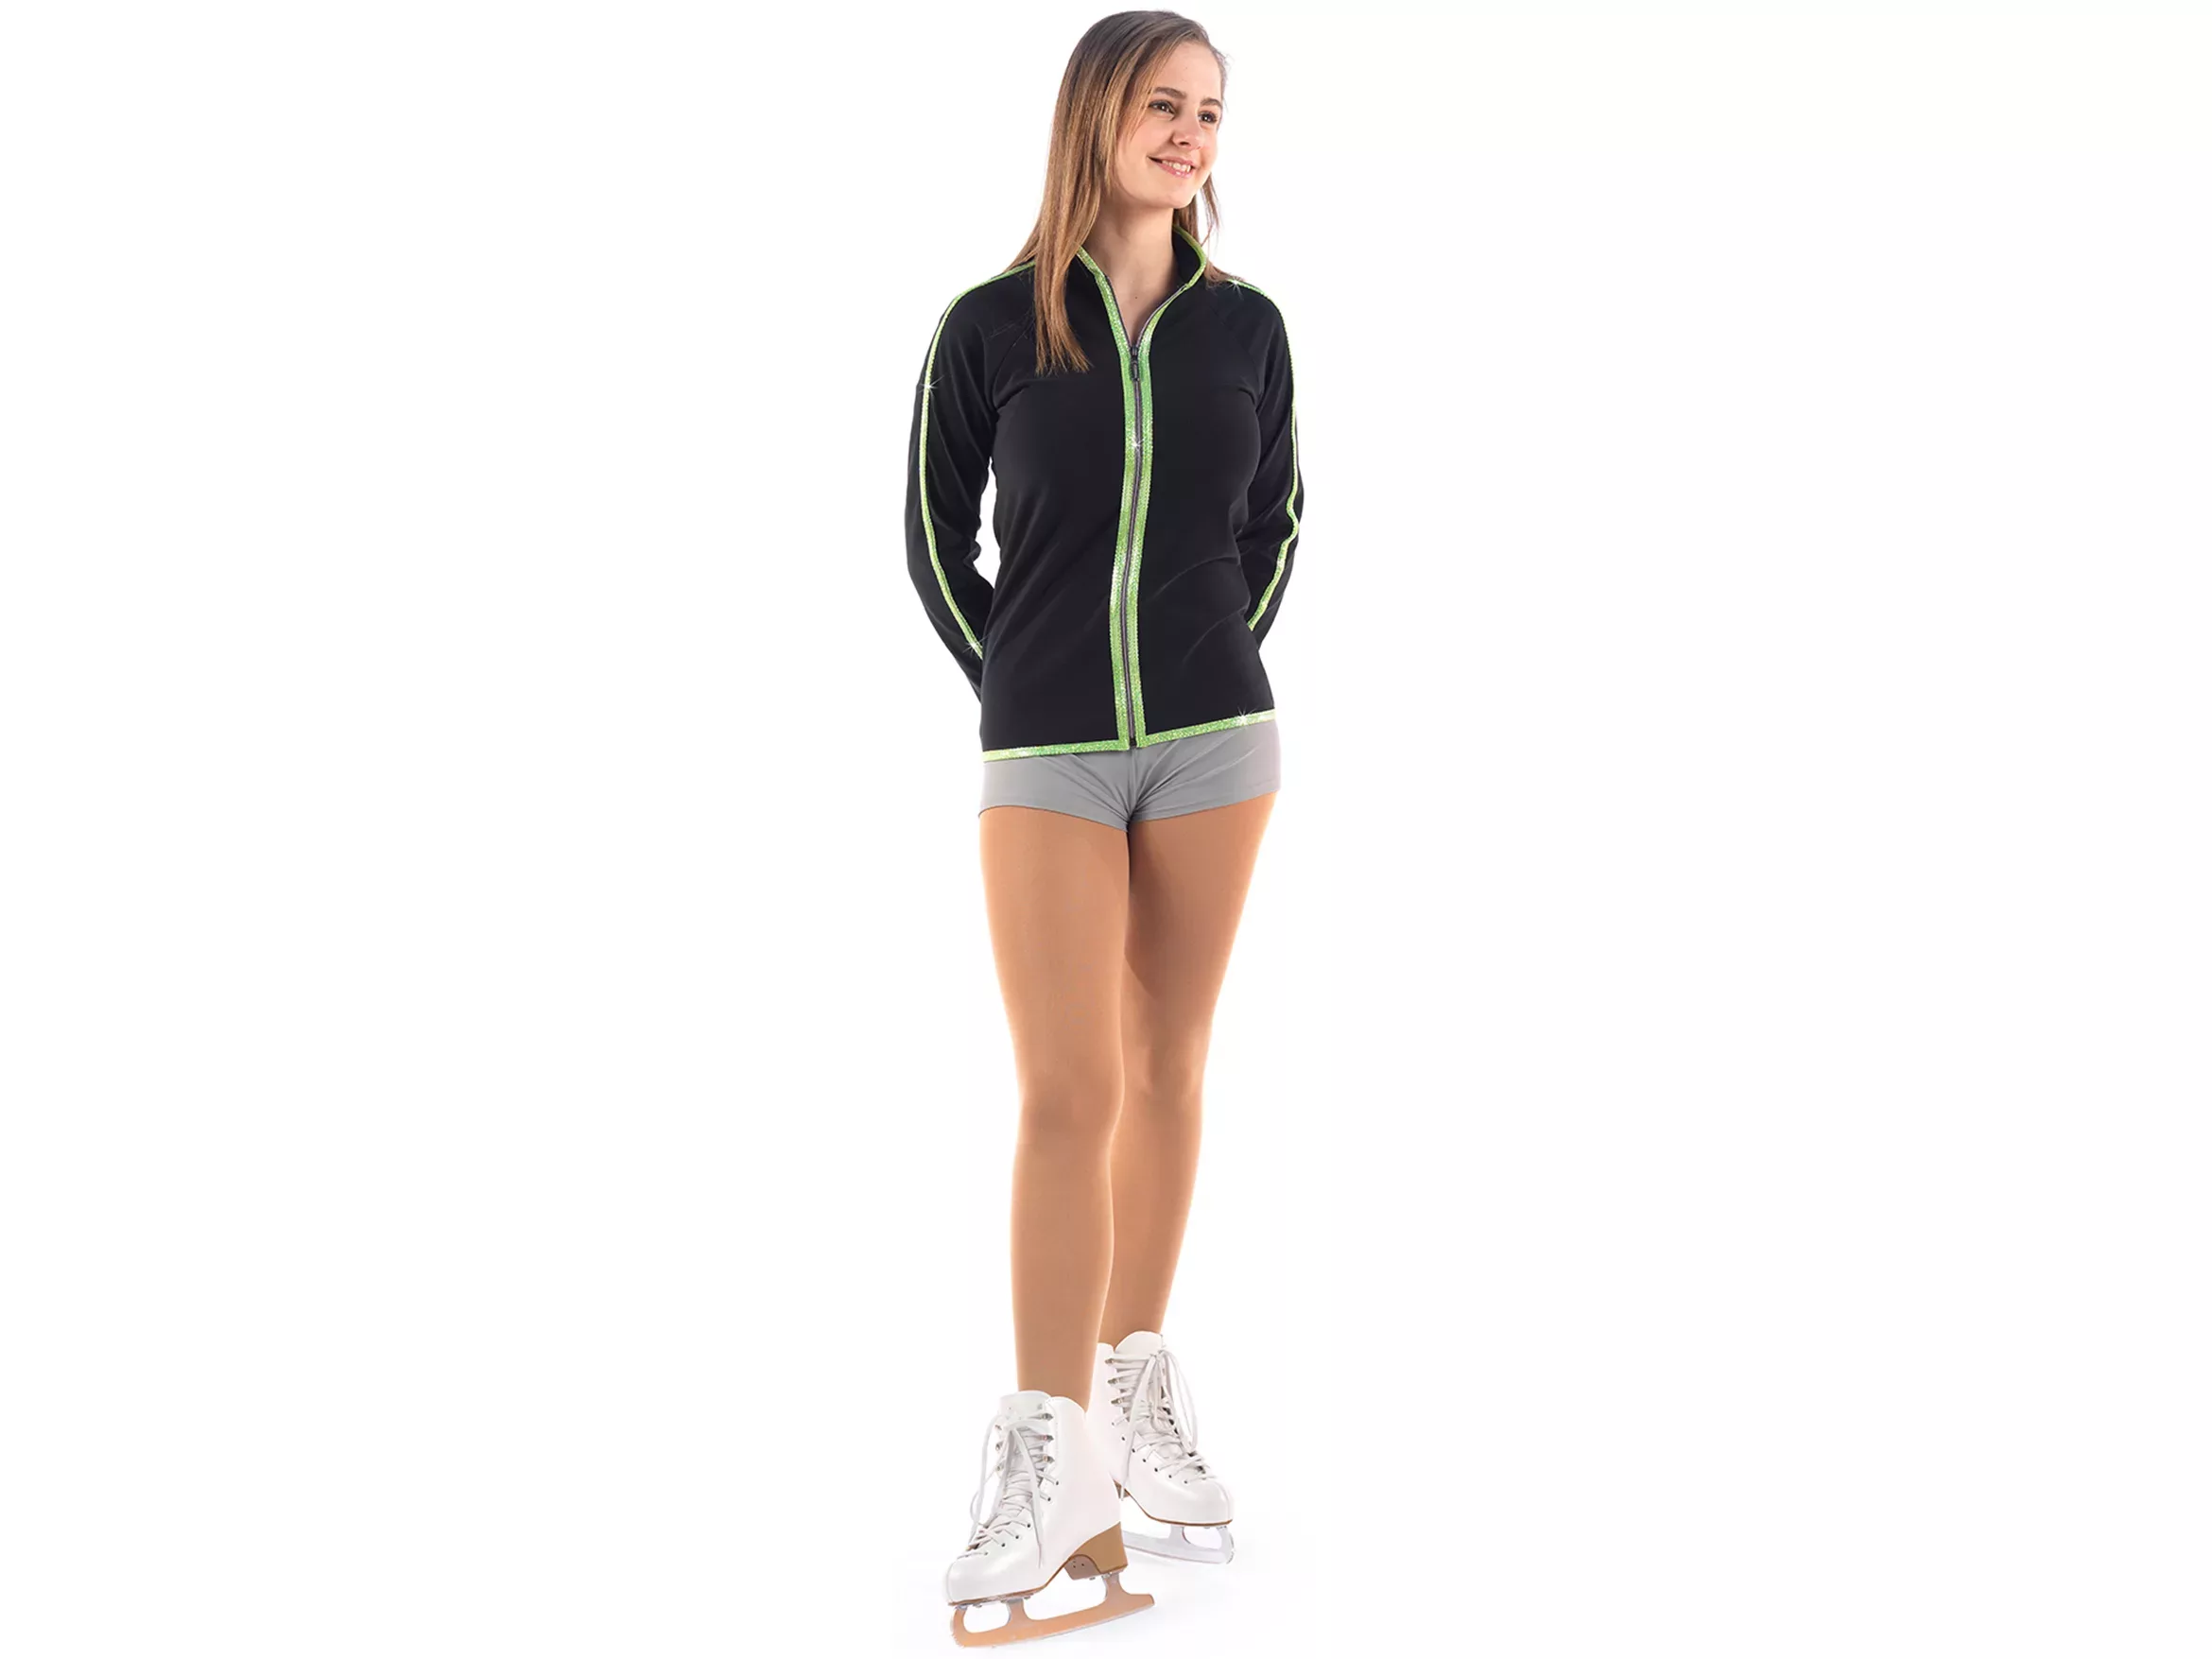 Veste de patinage artistique Sagester Style : 252, bords citron vert Vestes pour femmes et filles